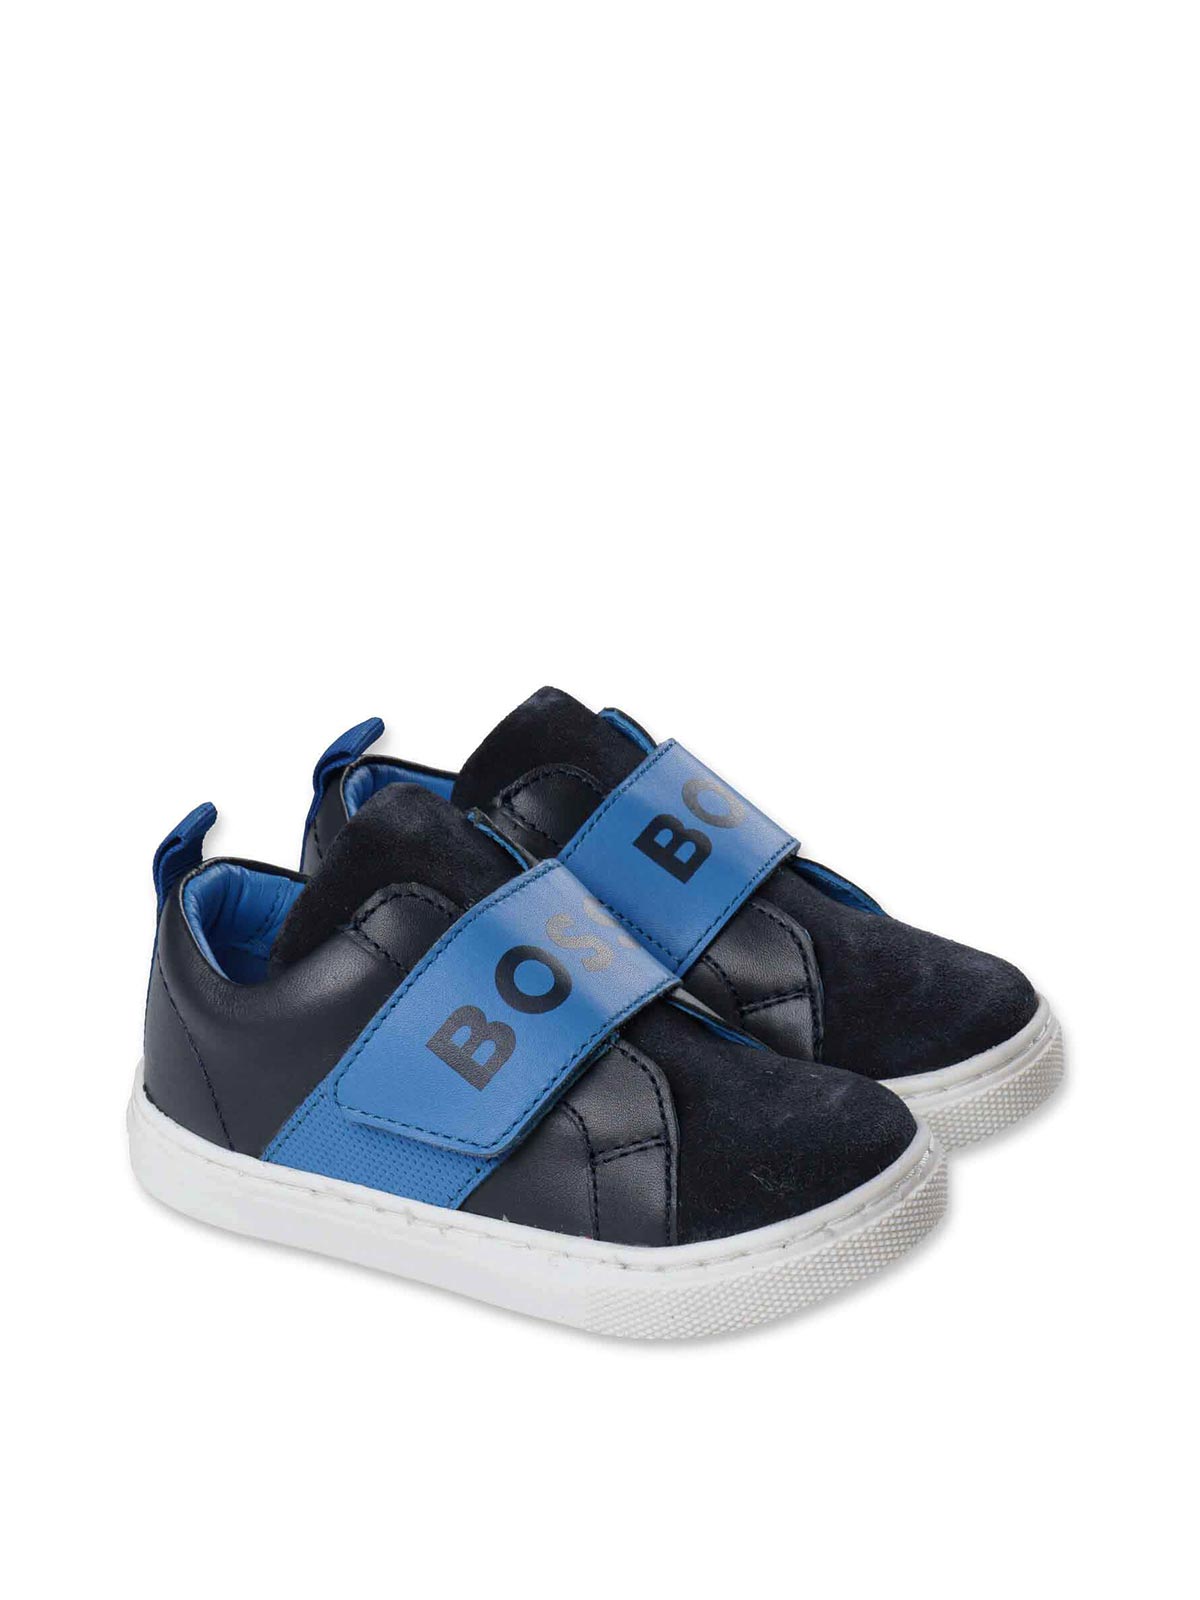 Hugo Boss Kids' Navy Blue Leather Boy Sneakers